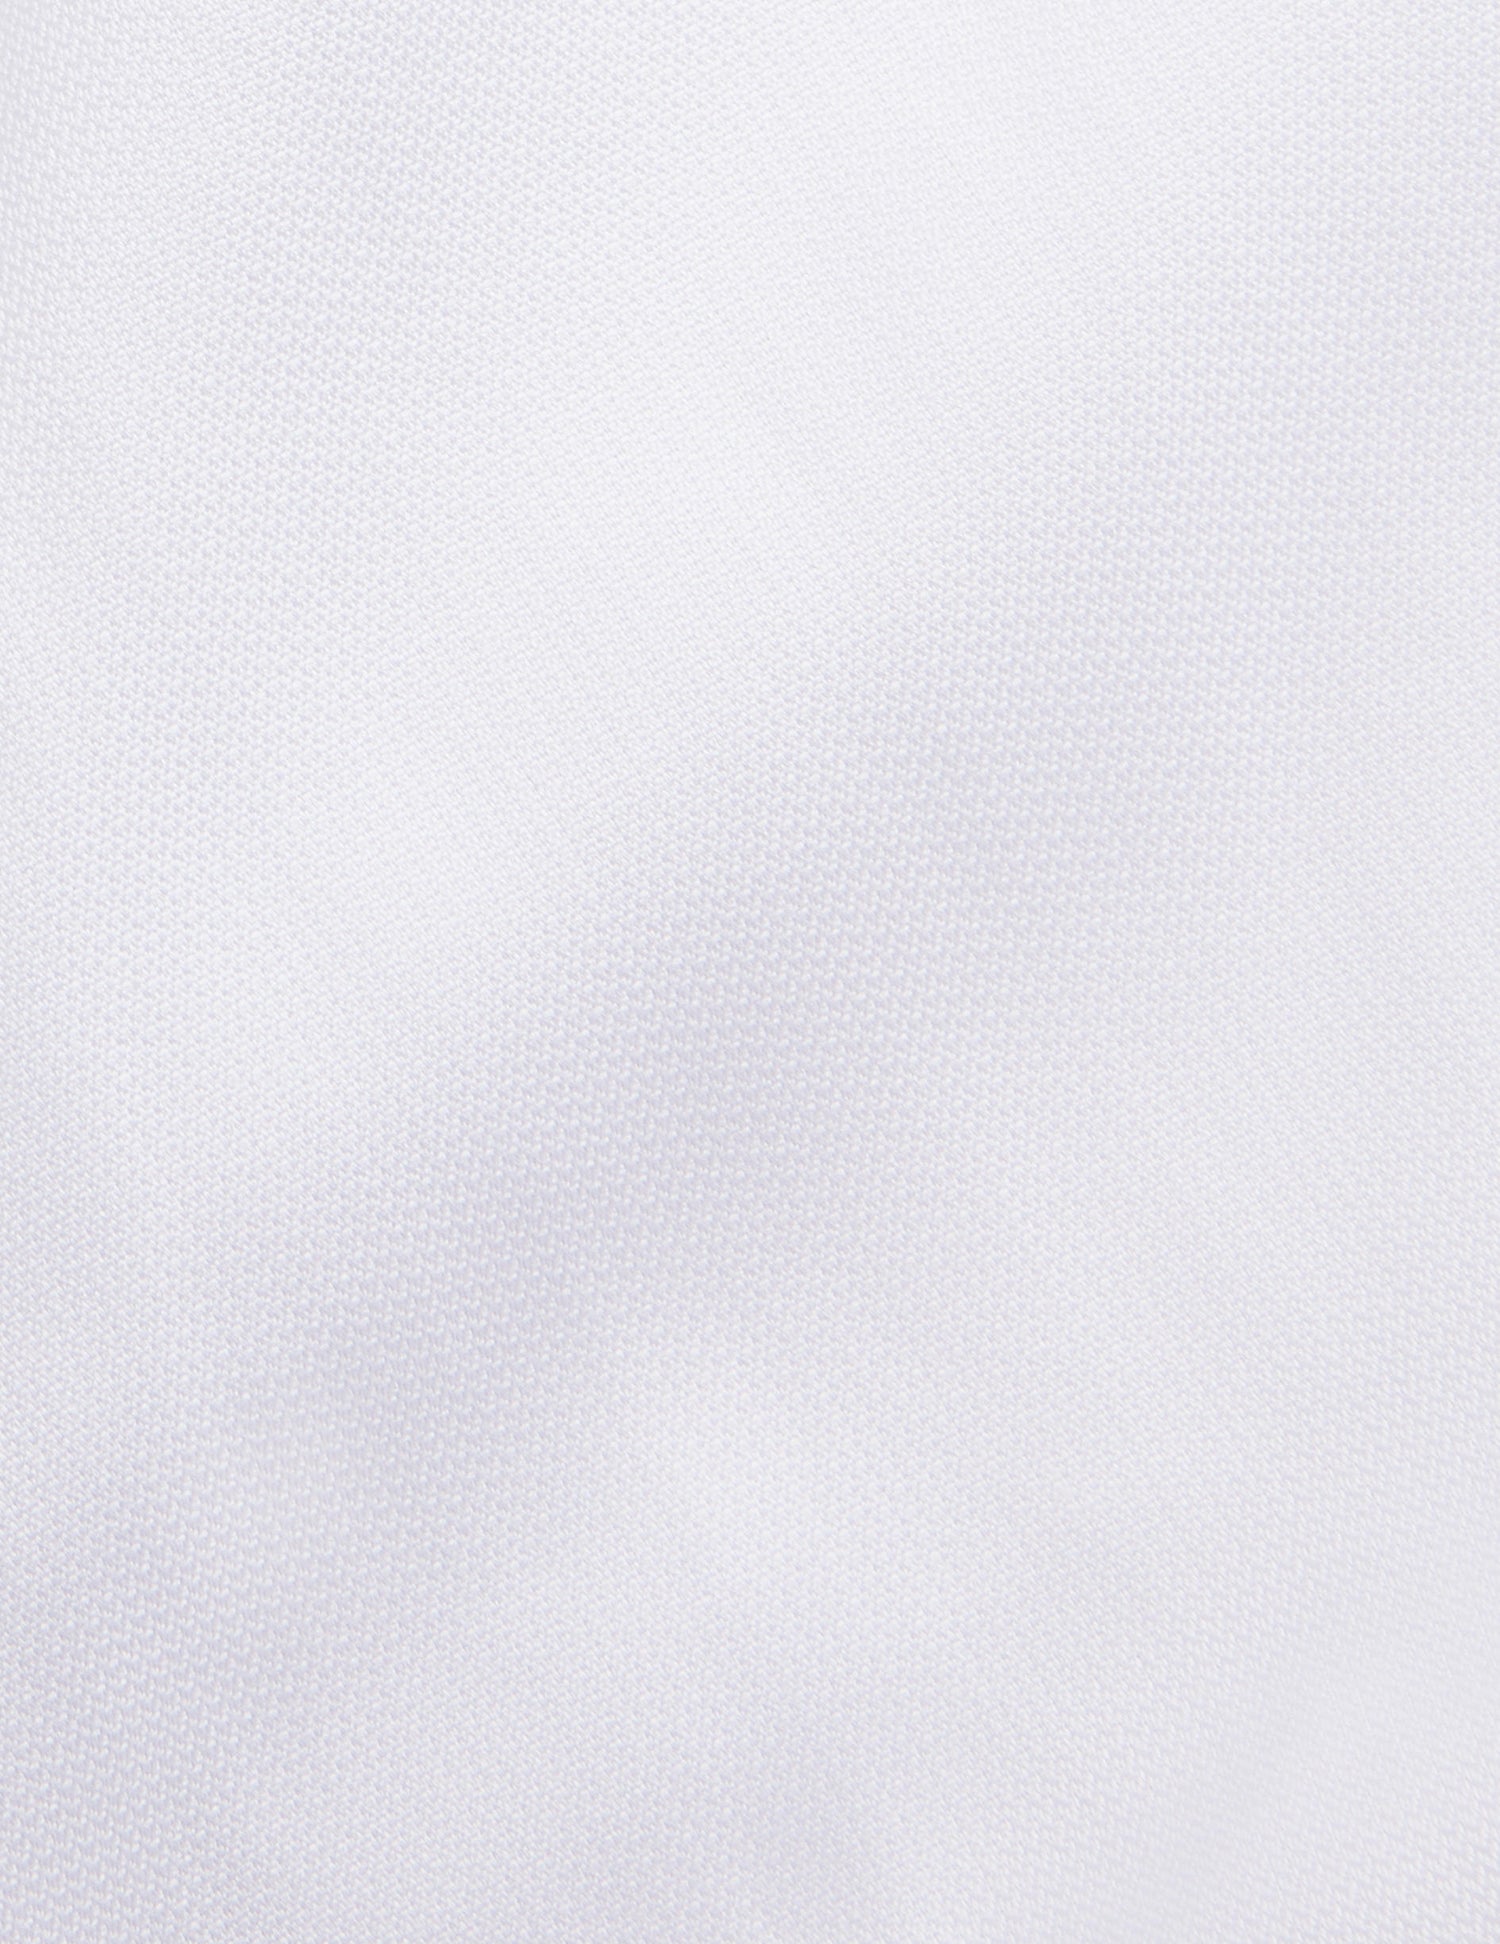 Chemise Semi-ajustée blanche - Façonné - Col Figaret#2